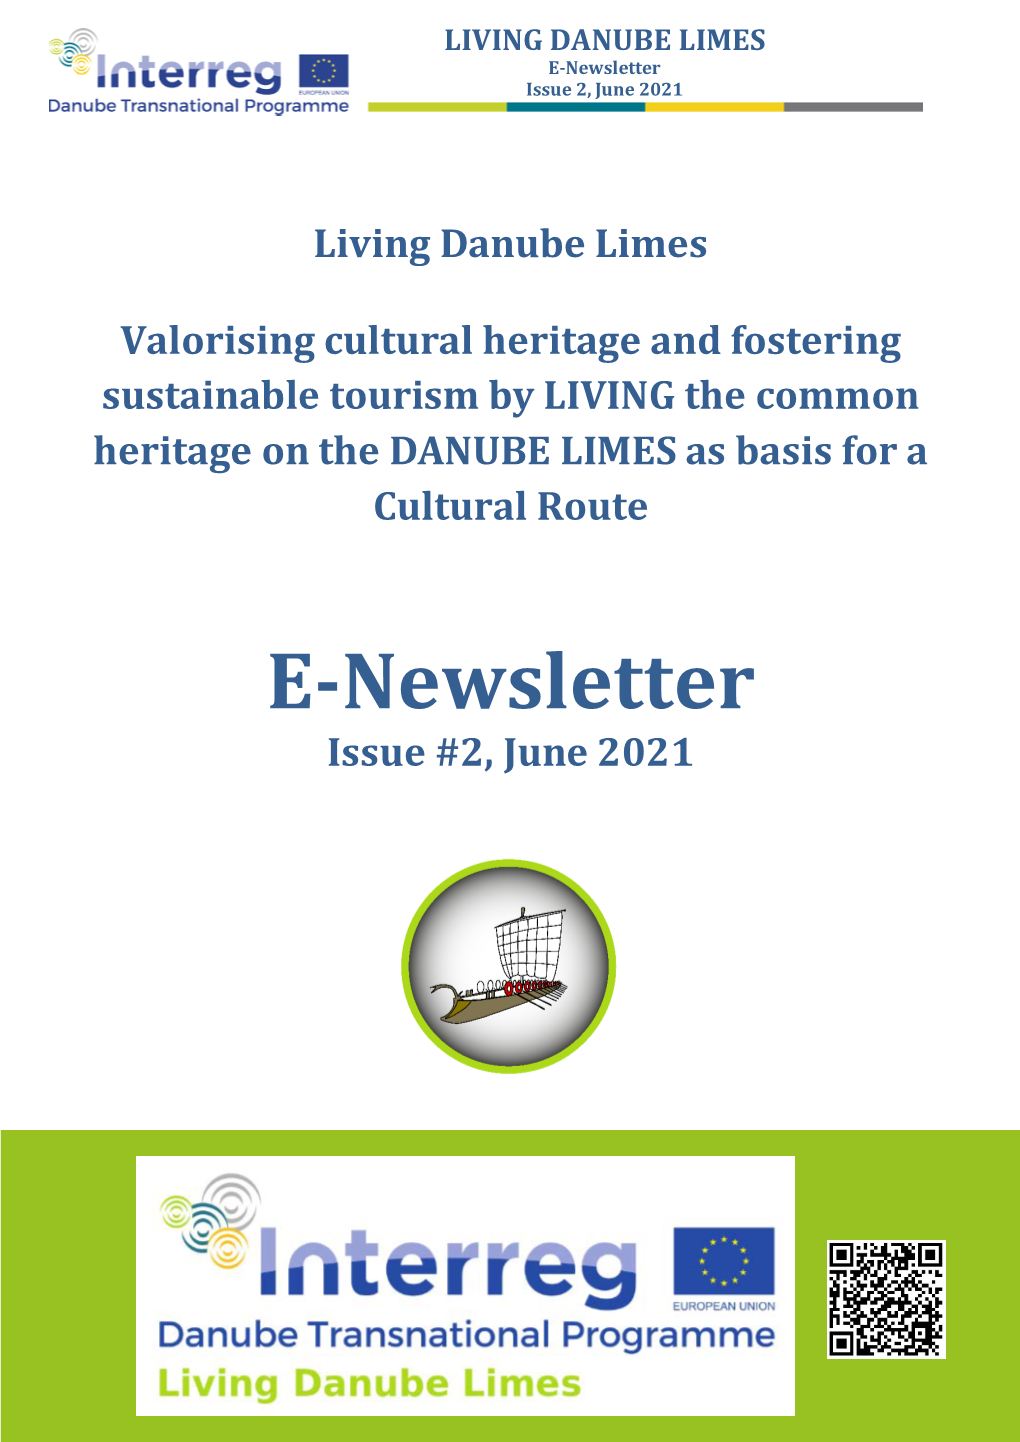 LIVING DANUBE LIMES E-Newsletter Issue 2, June 2021